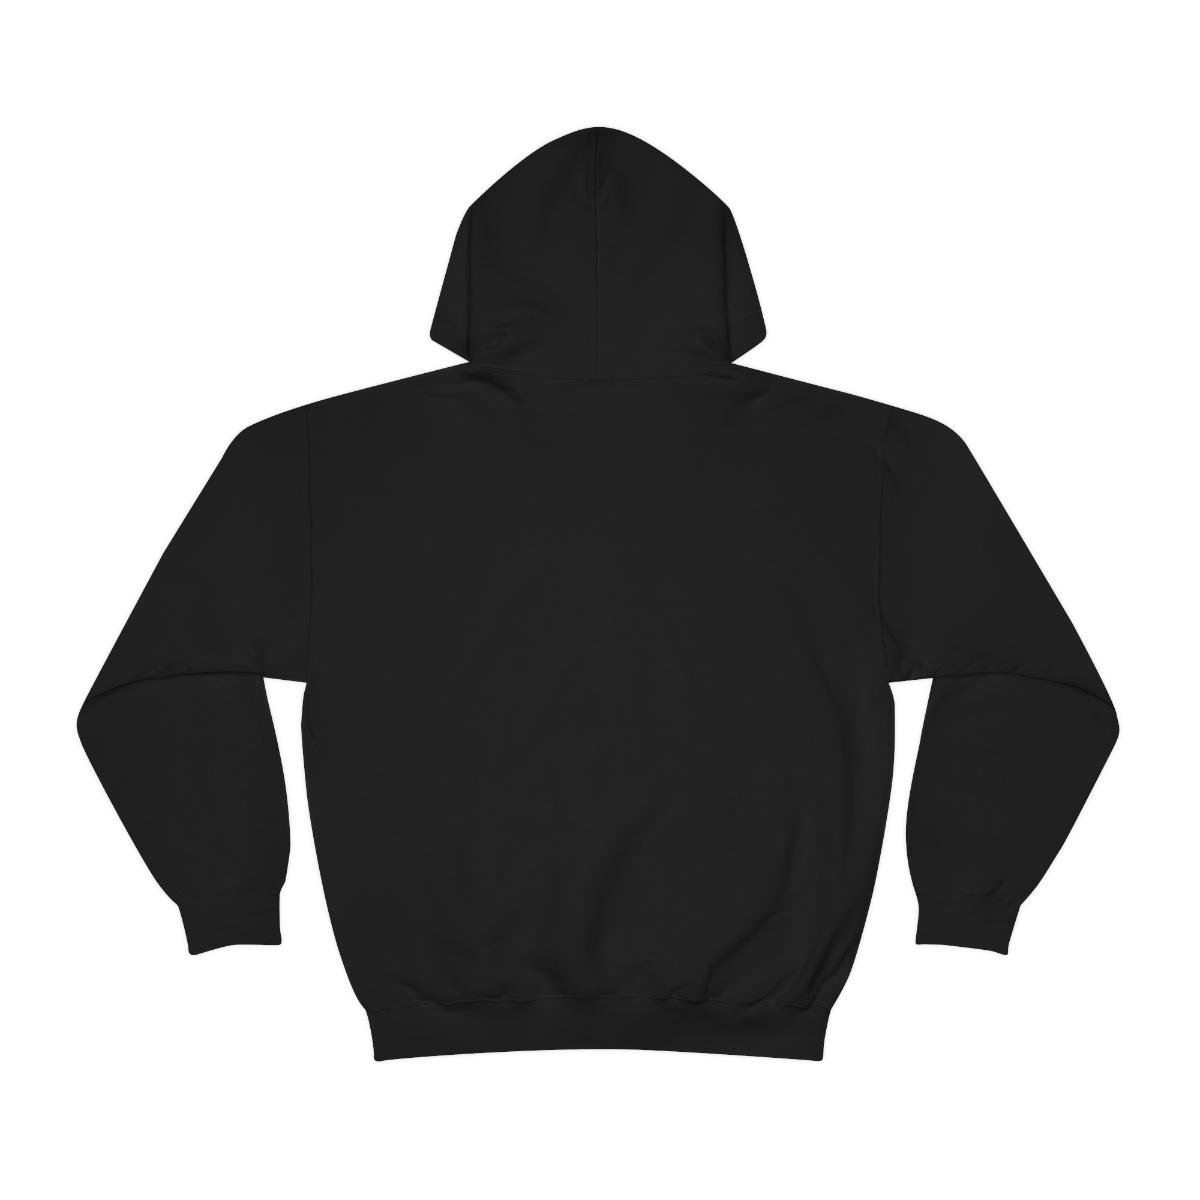 Minier – ReTooled Pullover Hooded Sweatshirt